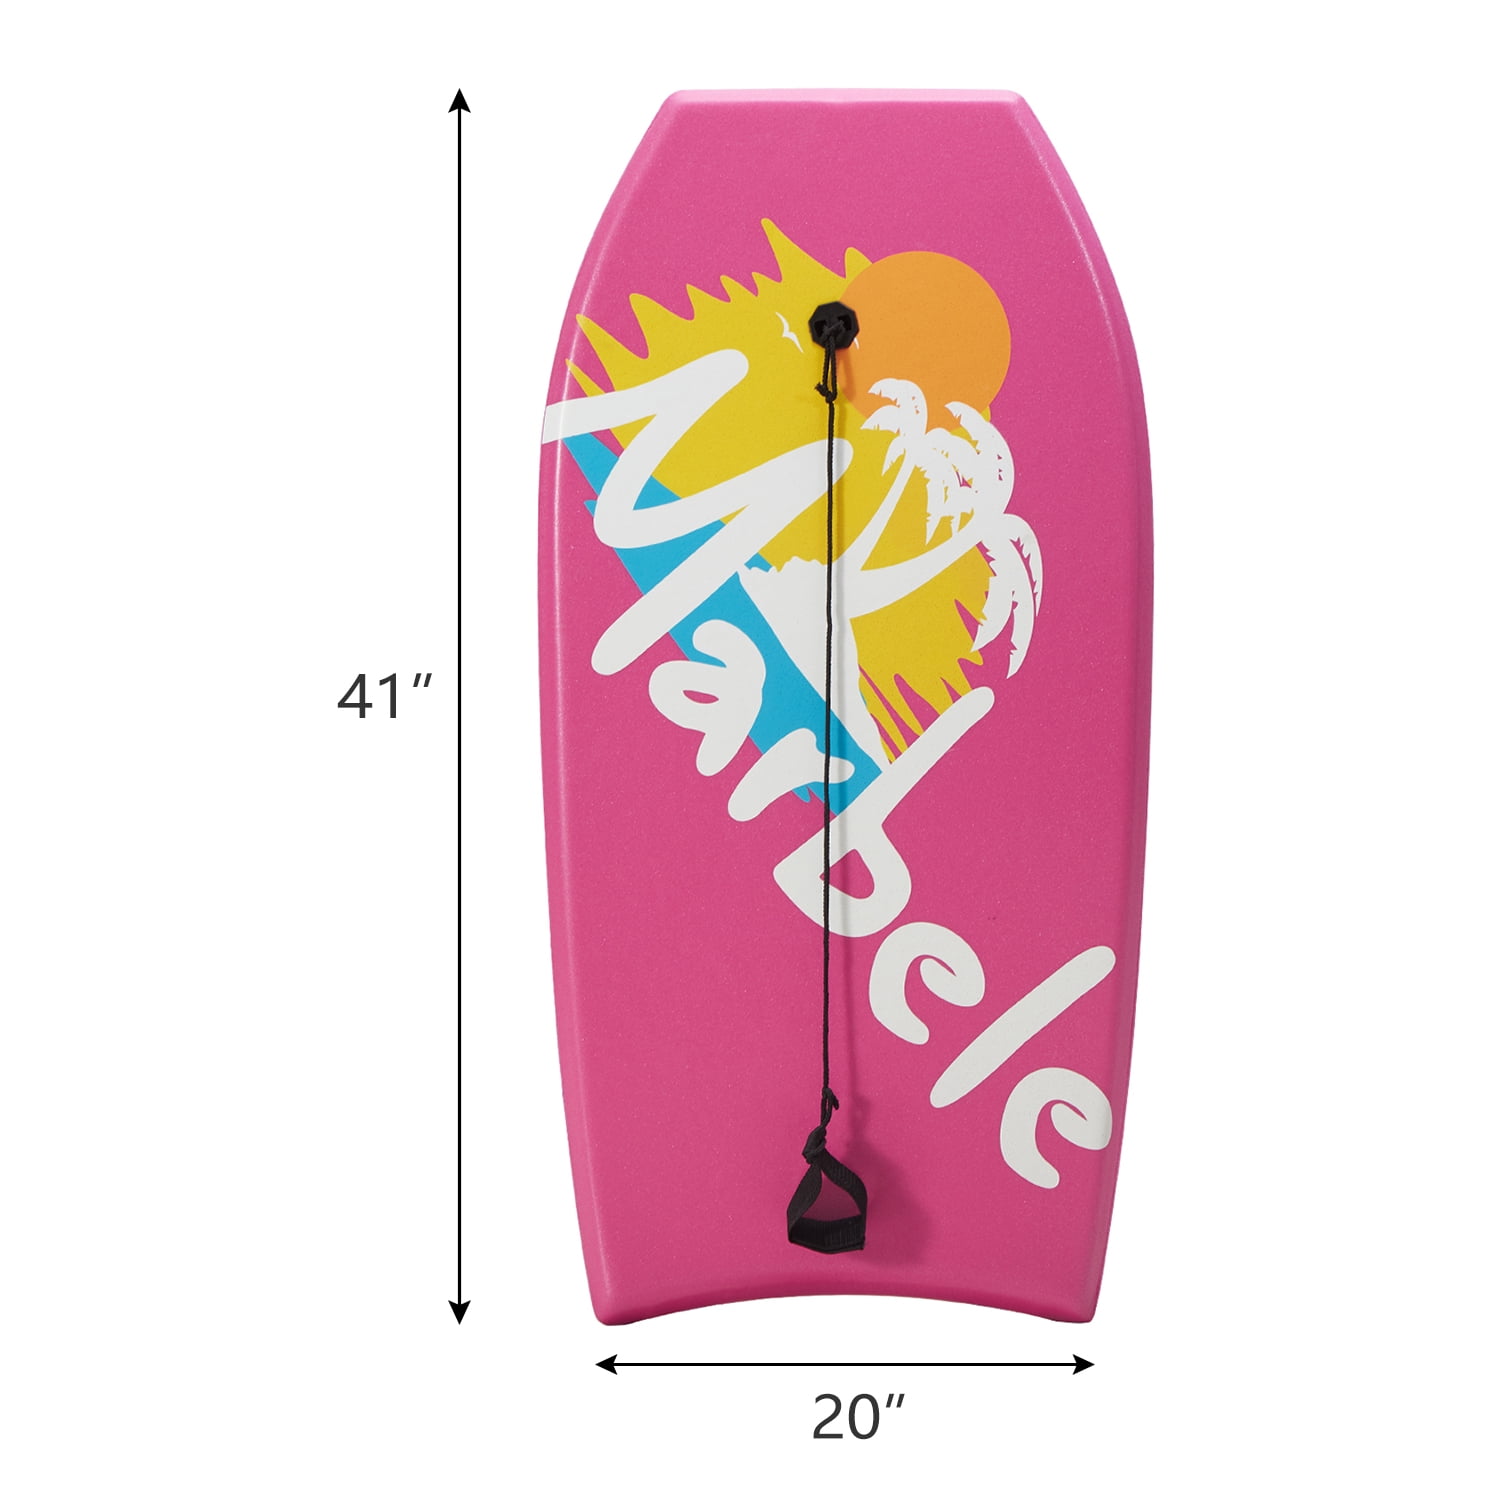 Kinbor 41'' Lightweight Body board Wrist Leash Surfboard Pink